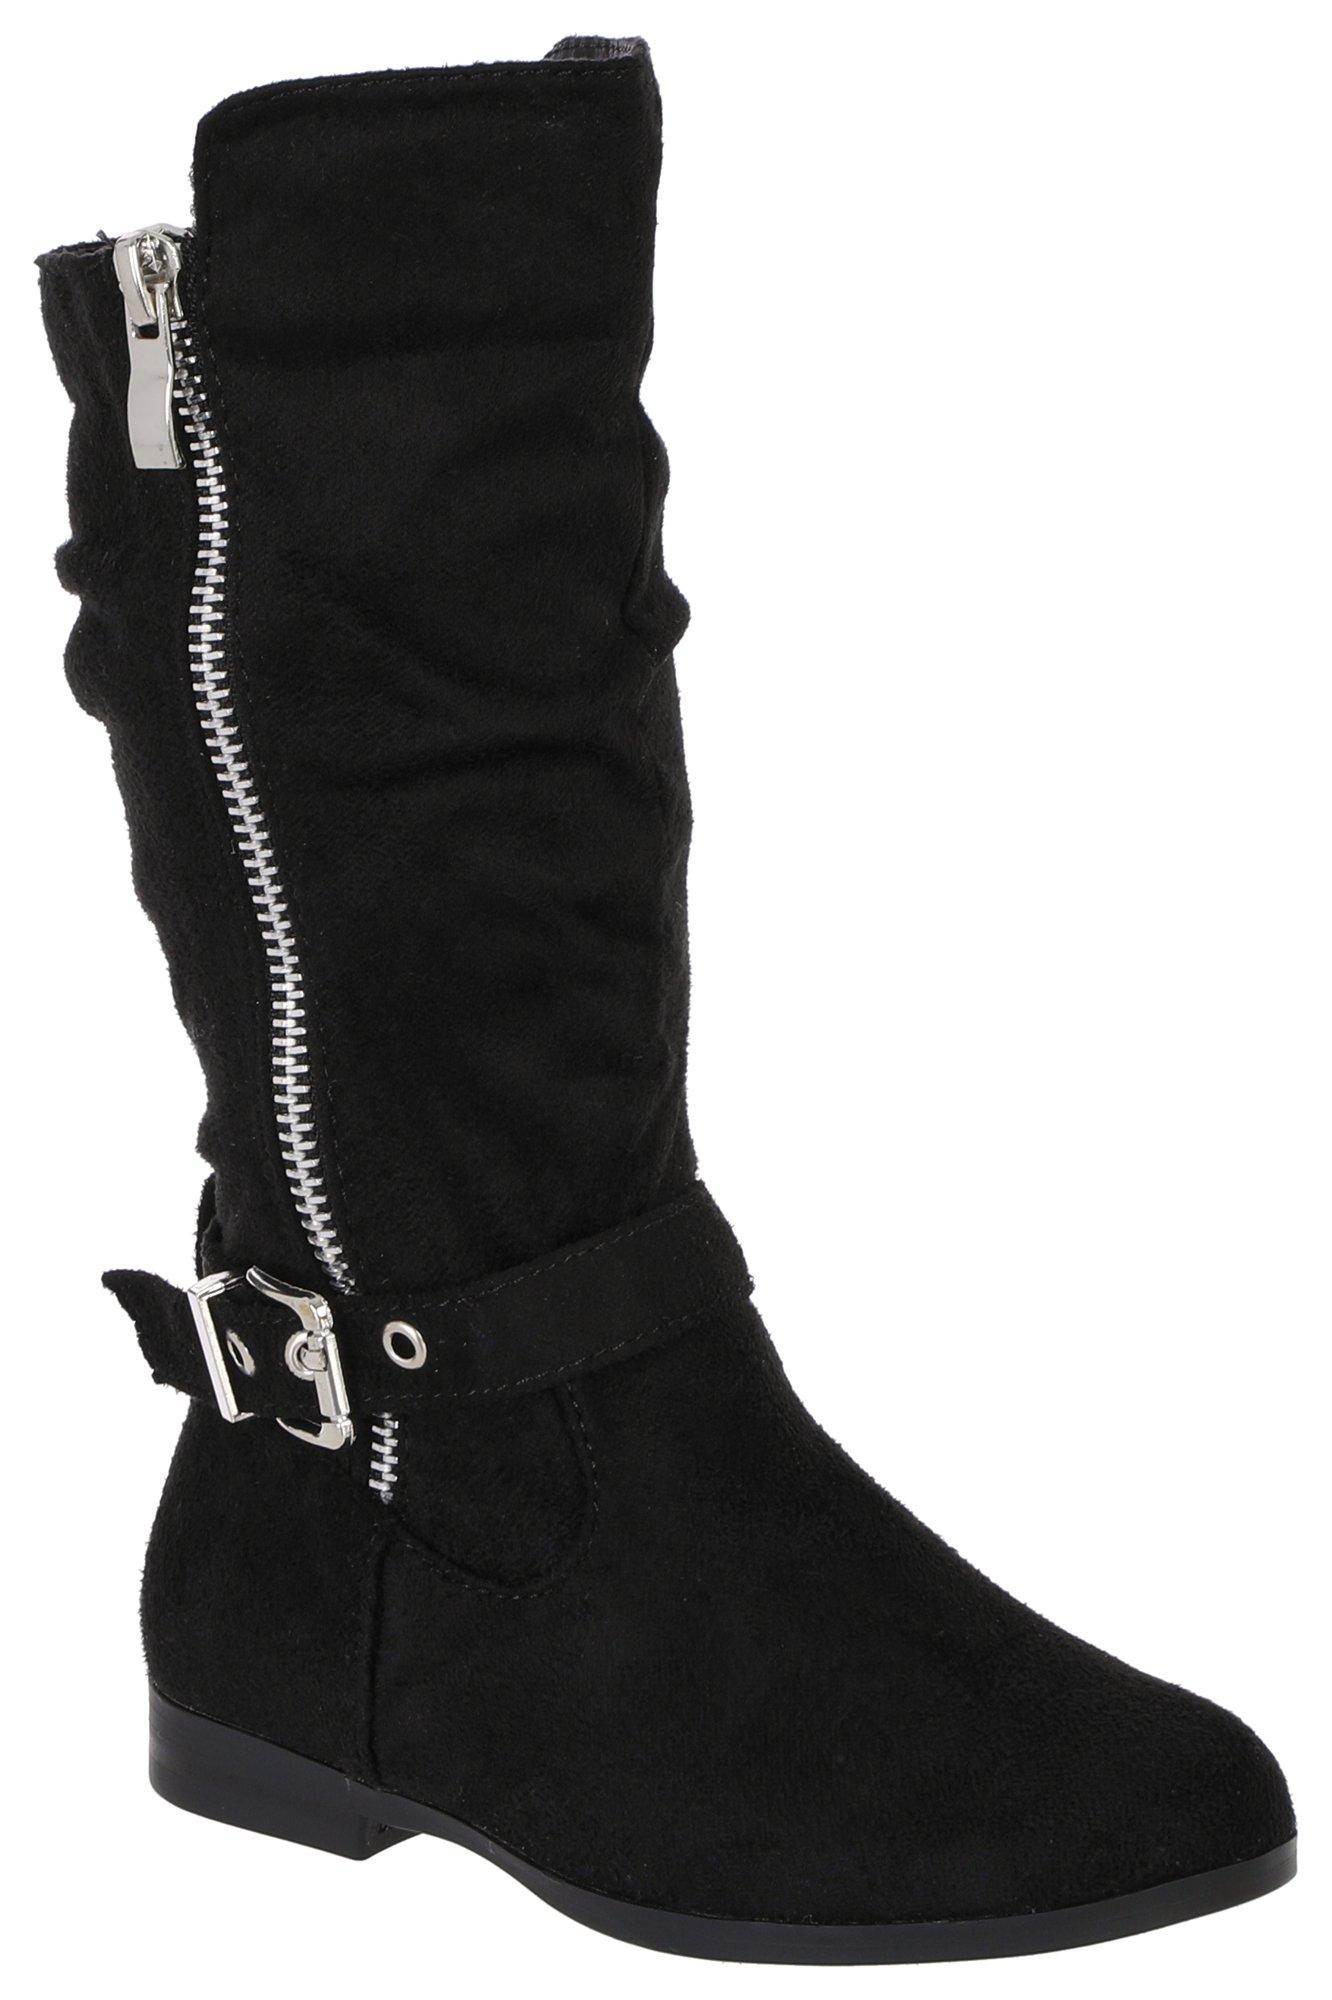 Girls Side Zip Tall Boots